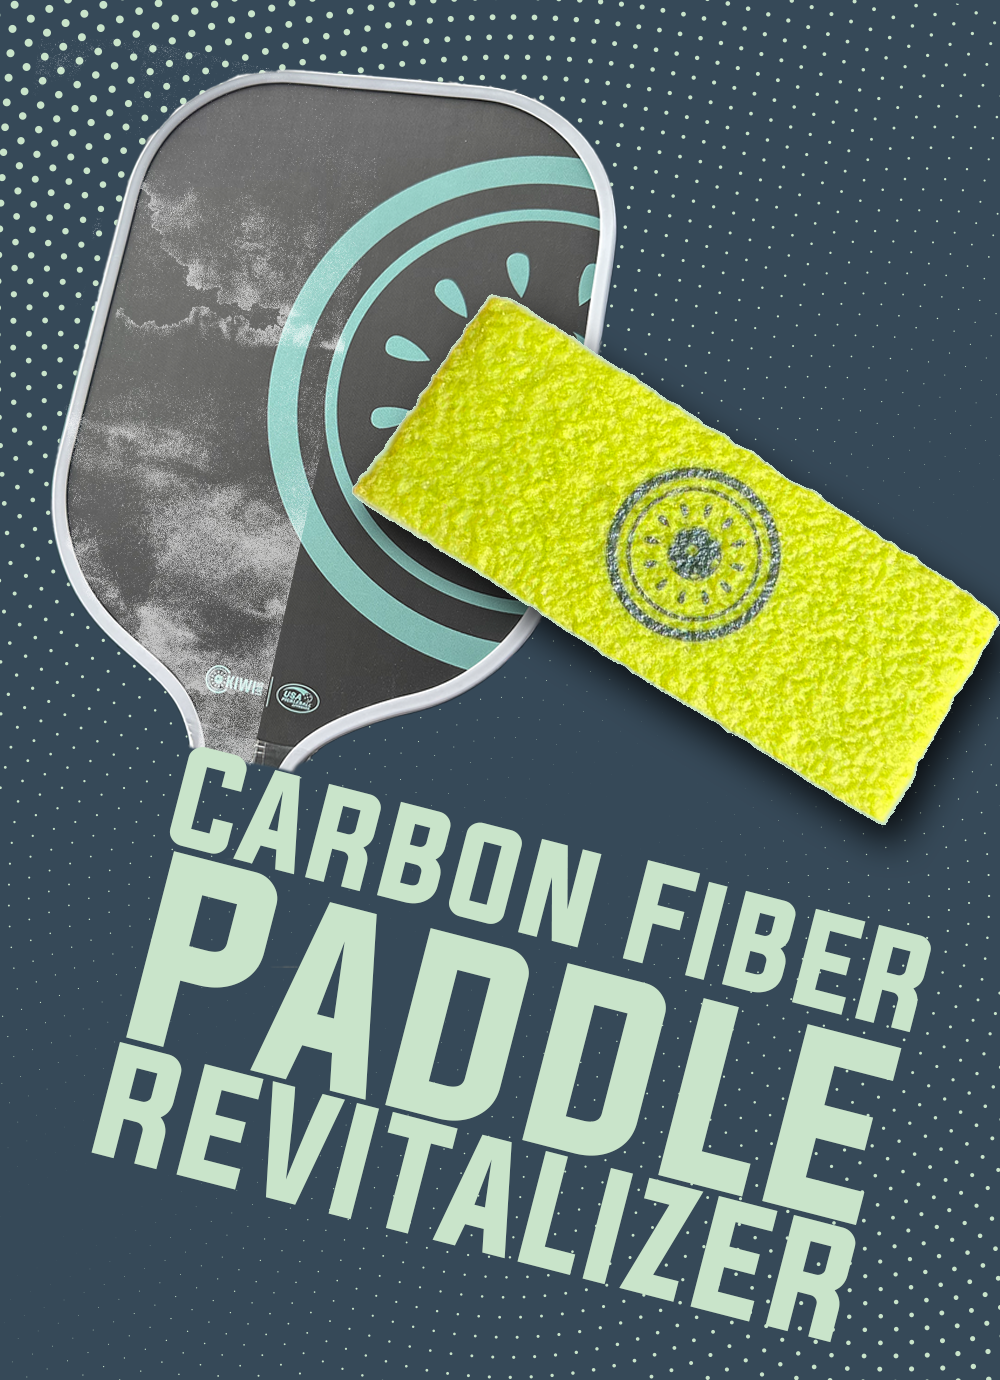 Paddle Revitalizer | Carbon Fiber Pickleball Paddle Cleaner and Eraser